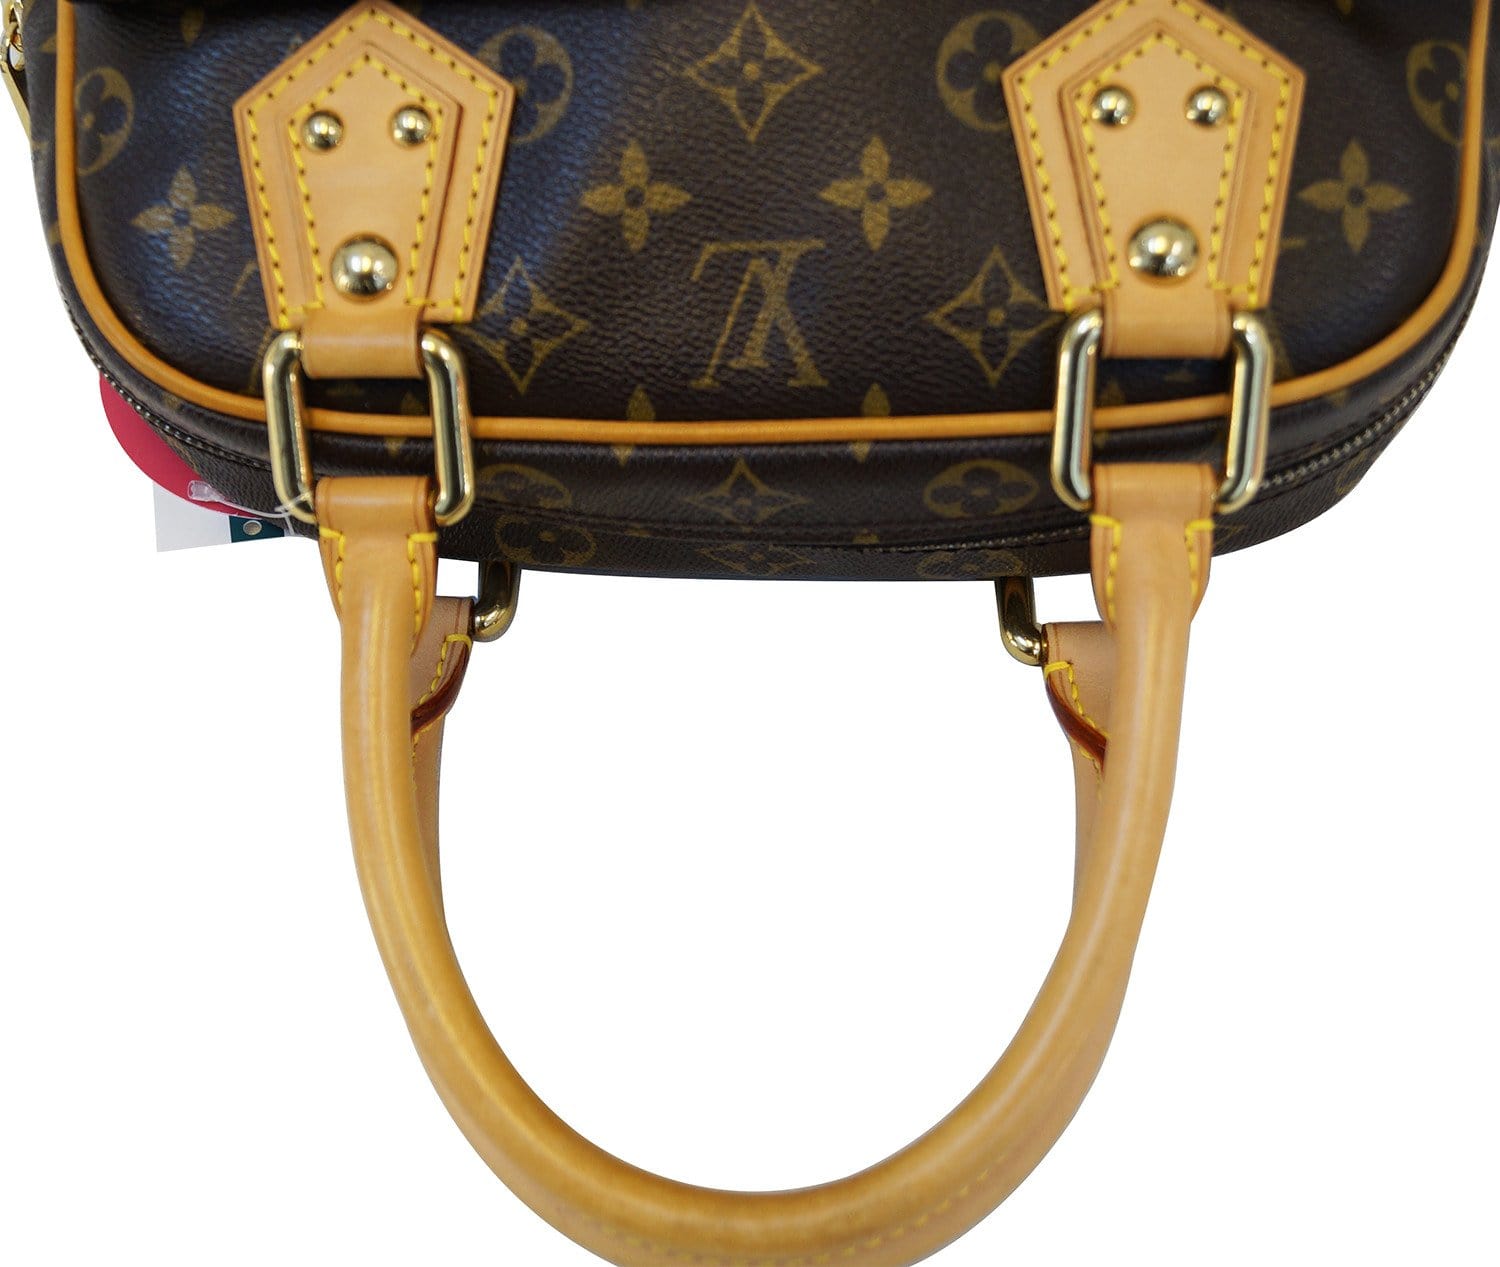 Authentic Louis Vuitton Manhattan Leather Handbag Monogram Signature Logo  Purse